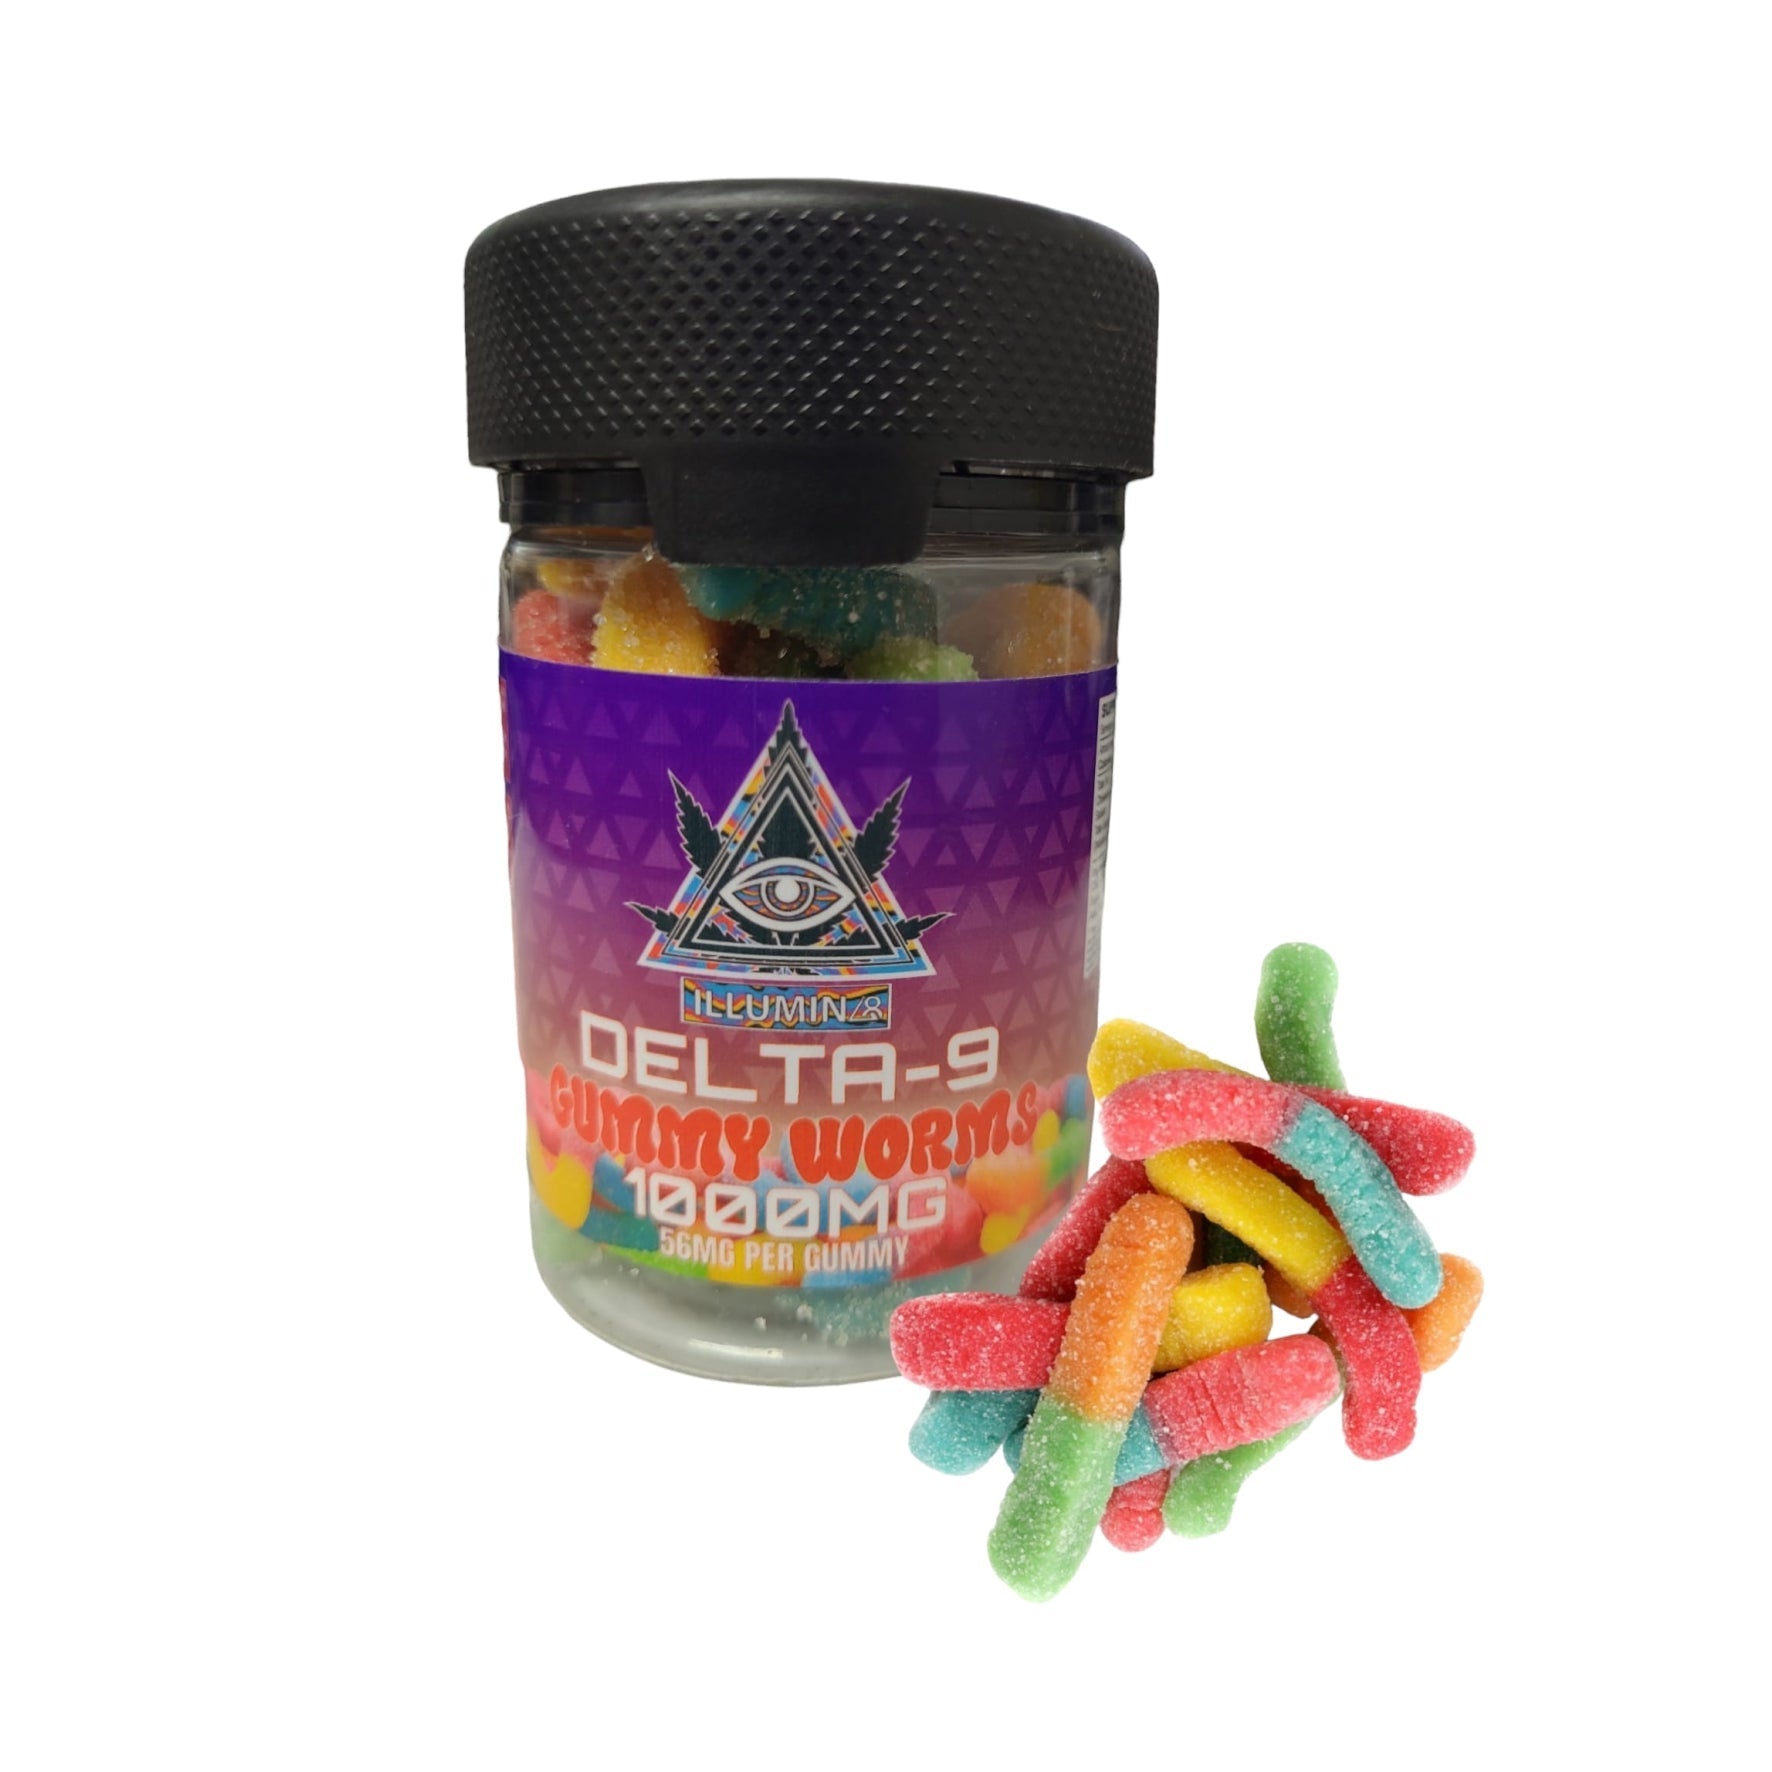 BOGO Delta-9 Gummy Worms, 1000mg